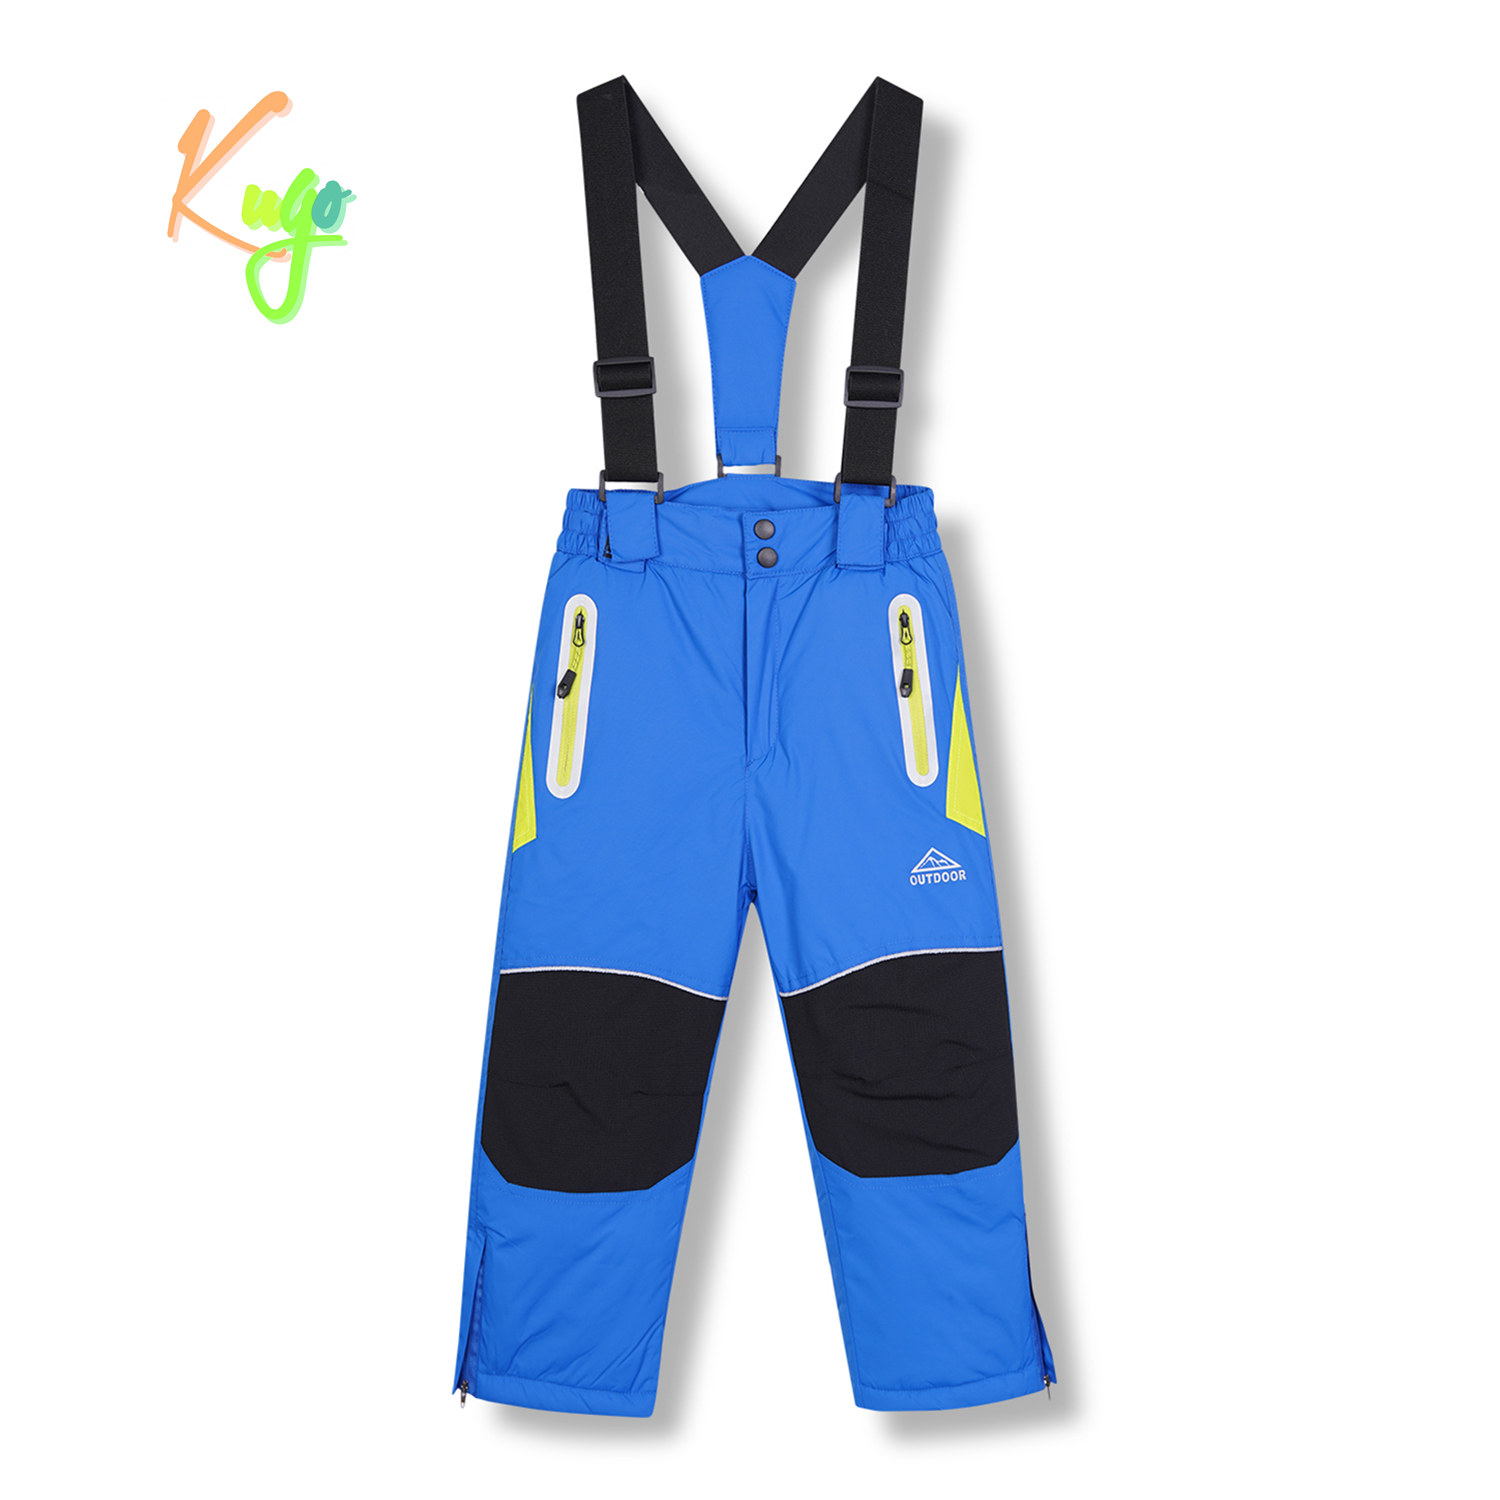 Chlapecké lyžařské kalhoty - KUGO DK8230, modrá Barva: Modrá, Velikost: 128